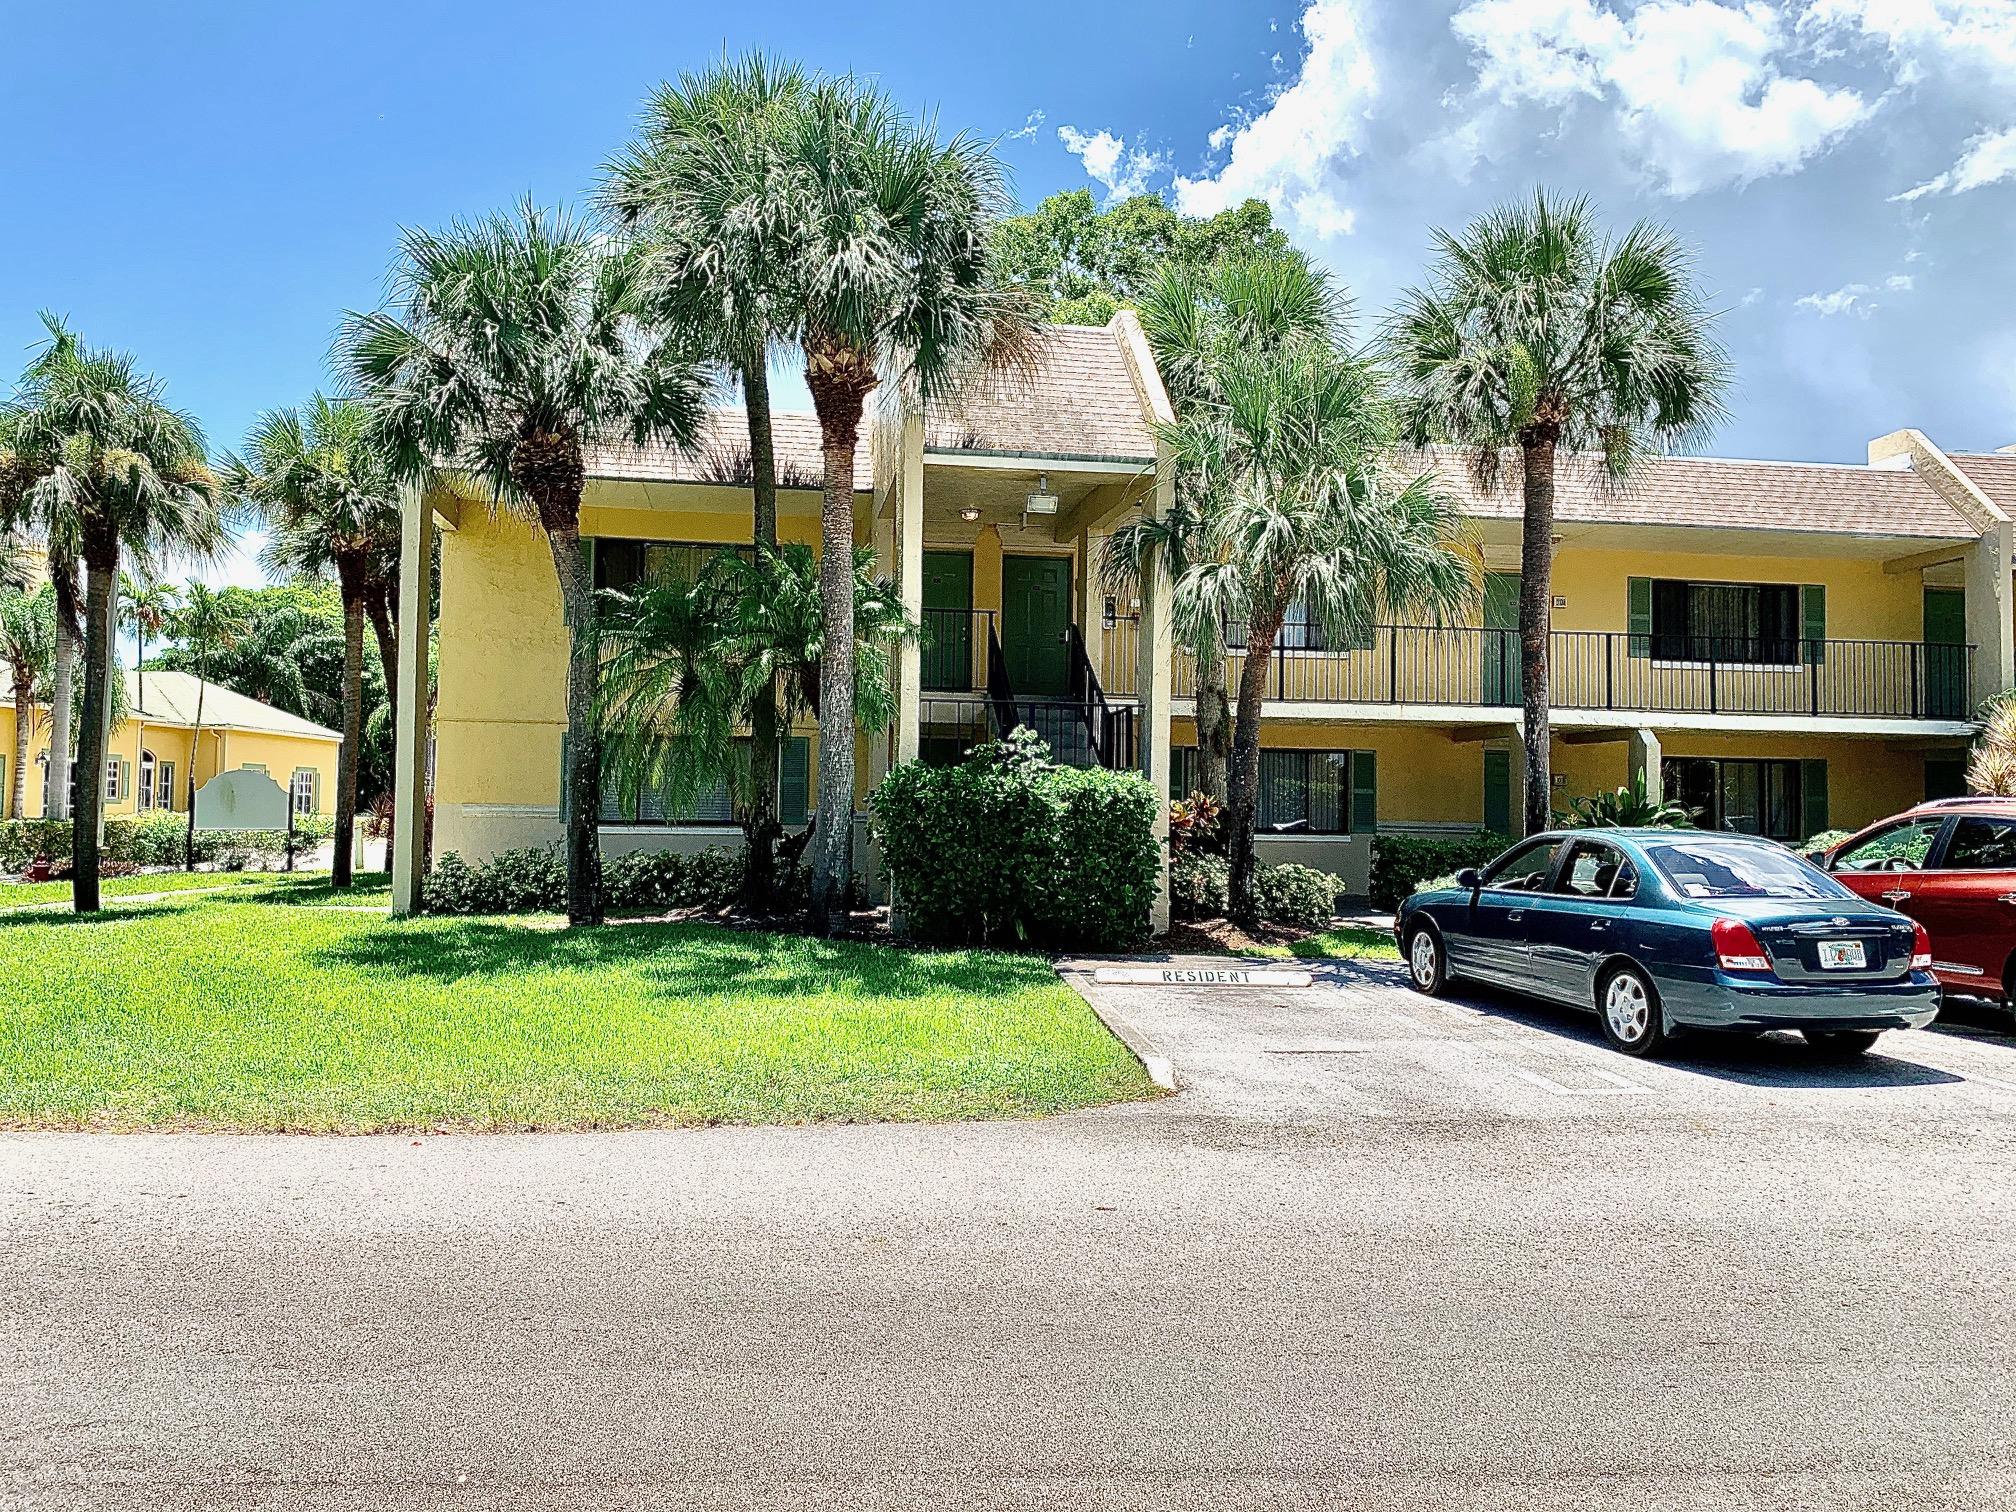 Property for Sale at 302 Meadows Circle 302, Boynton Beach, Palm Beach County, Florida - Bedrooms: 2 
Bathrooms: 2  - $228,000